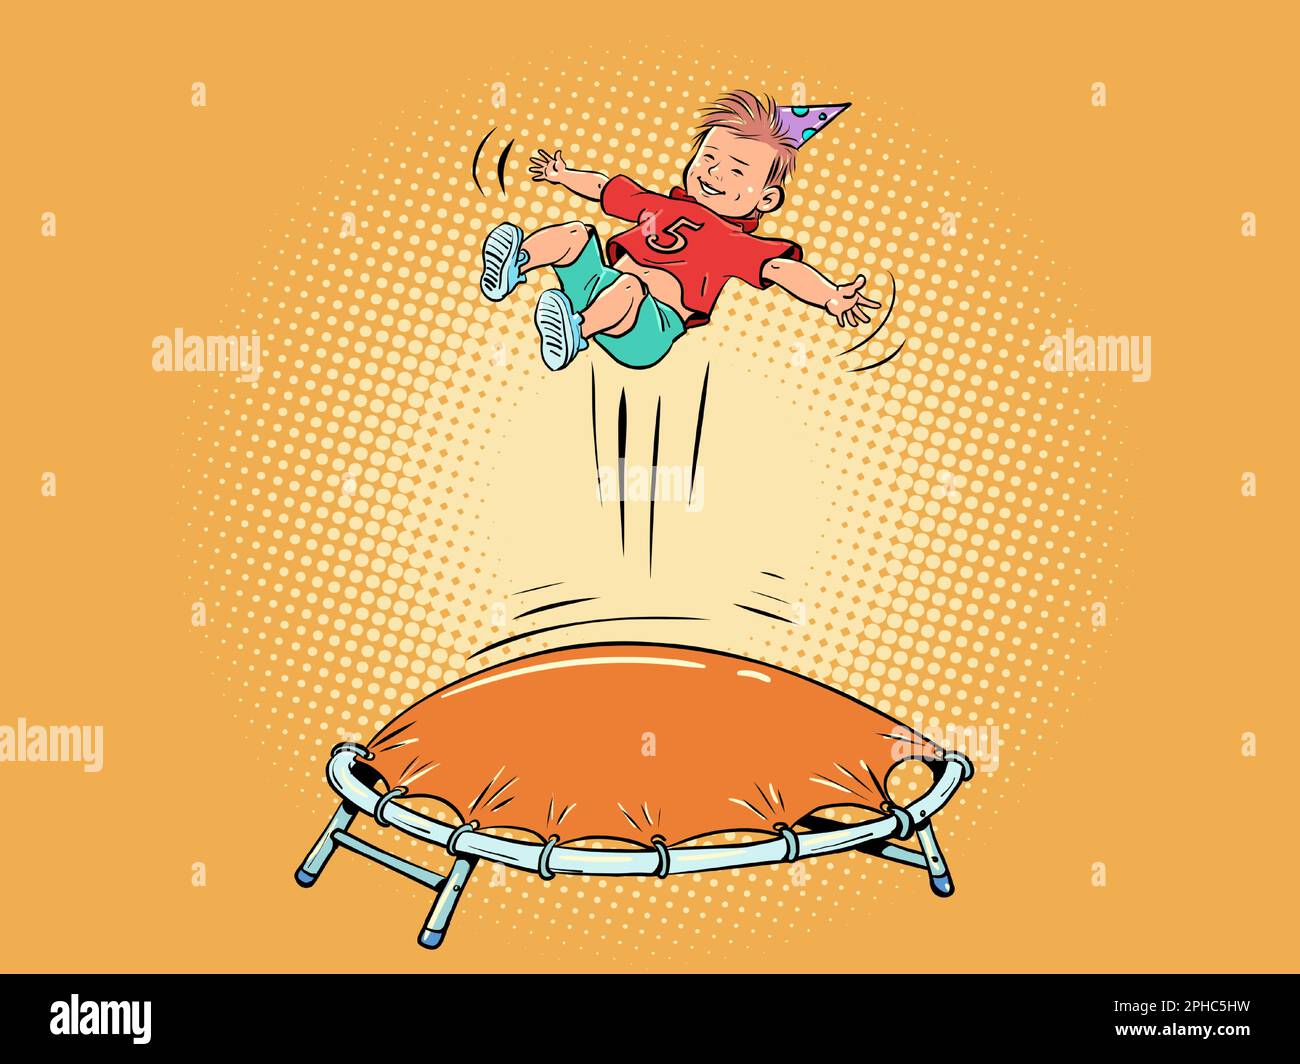 Der Junge springt auf das Trampolin. Unterhaltung für einen Kindergeburtstag. Werbung für ein Unterhaltungszentrum für Kinder. Stock Vektor